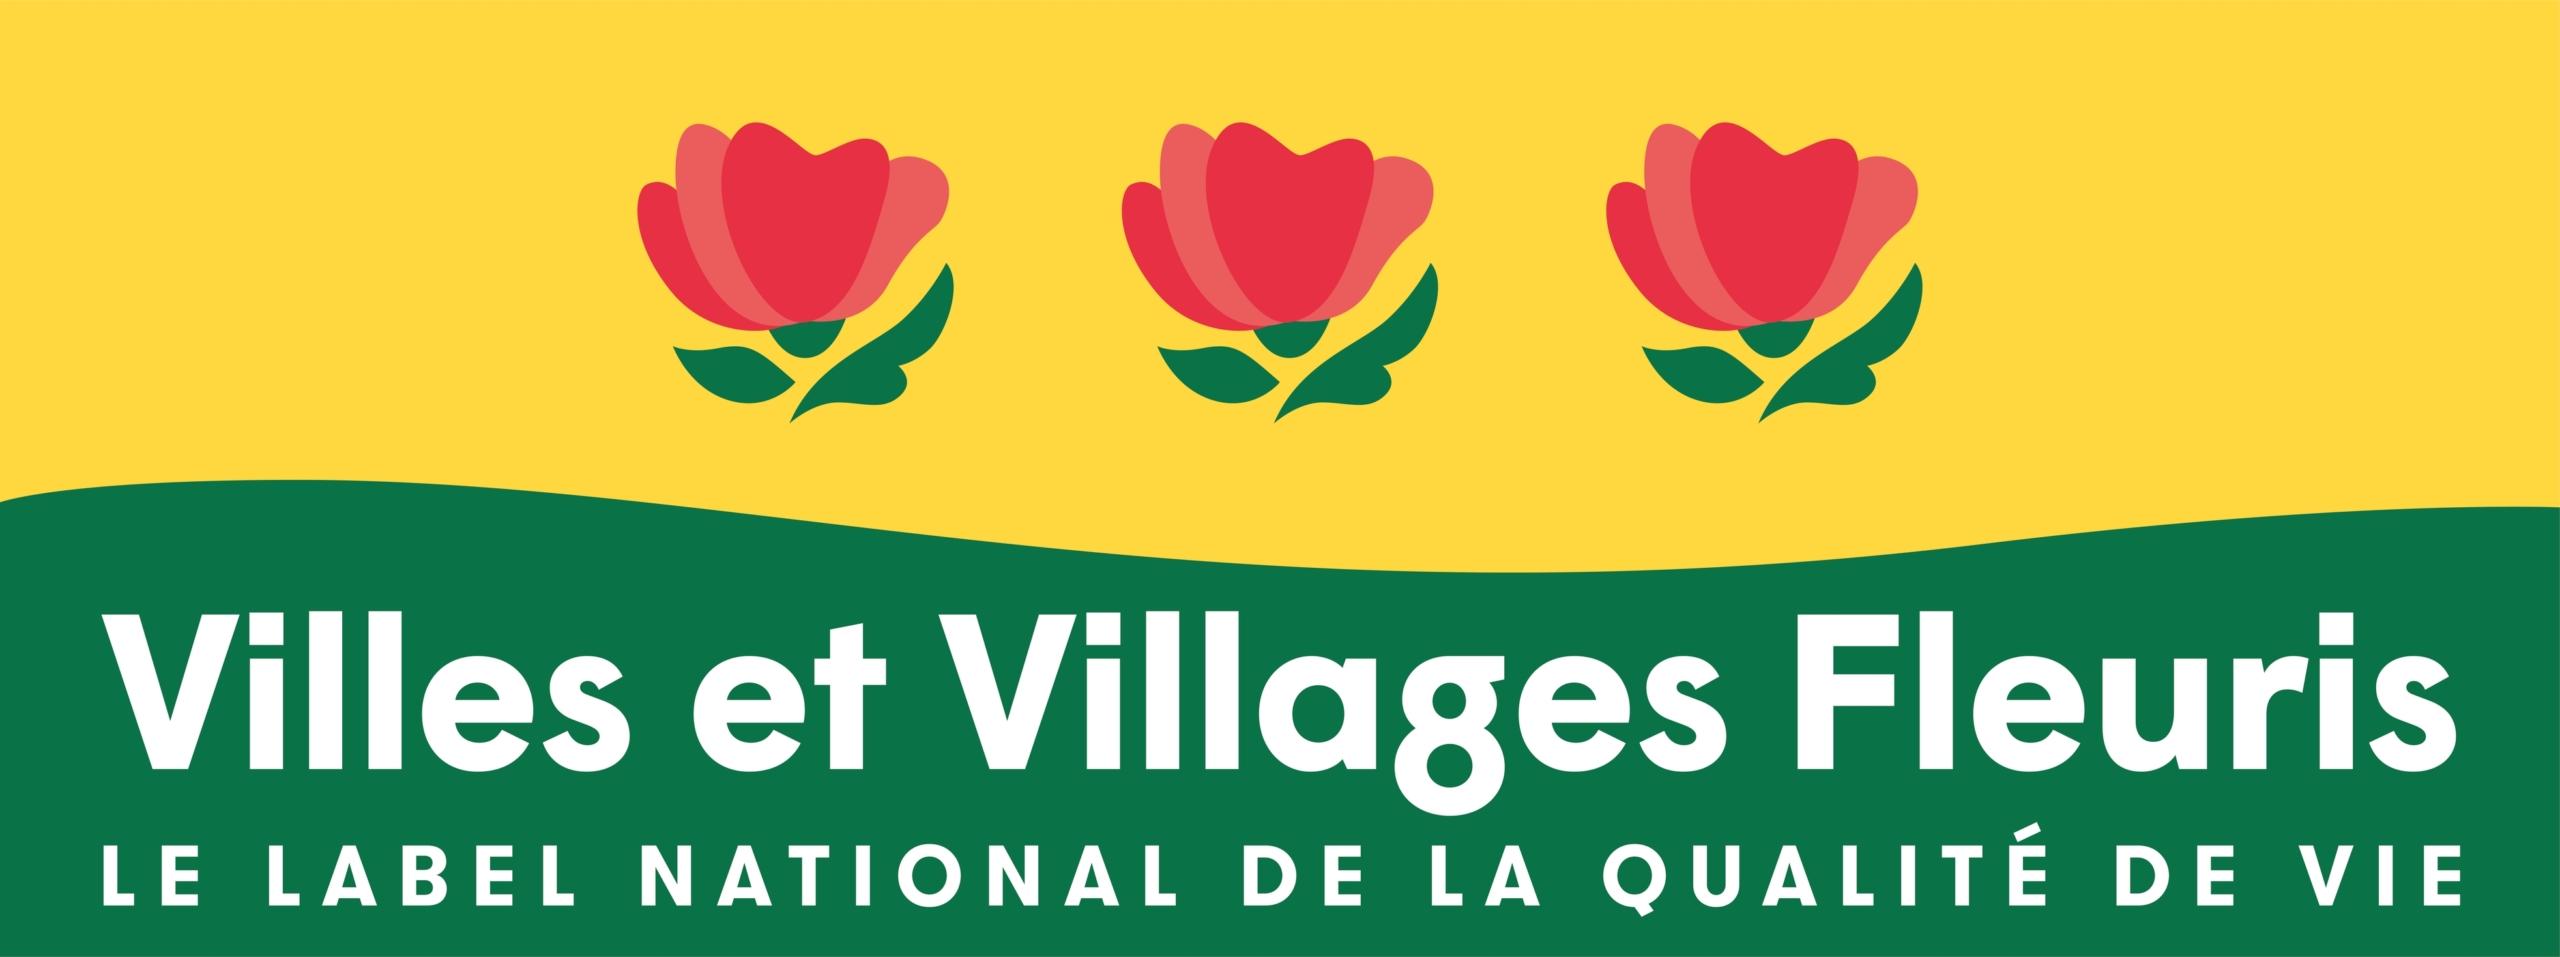 Ville de Créances ville fleurie 3 fleurs label national de la qualité de vie